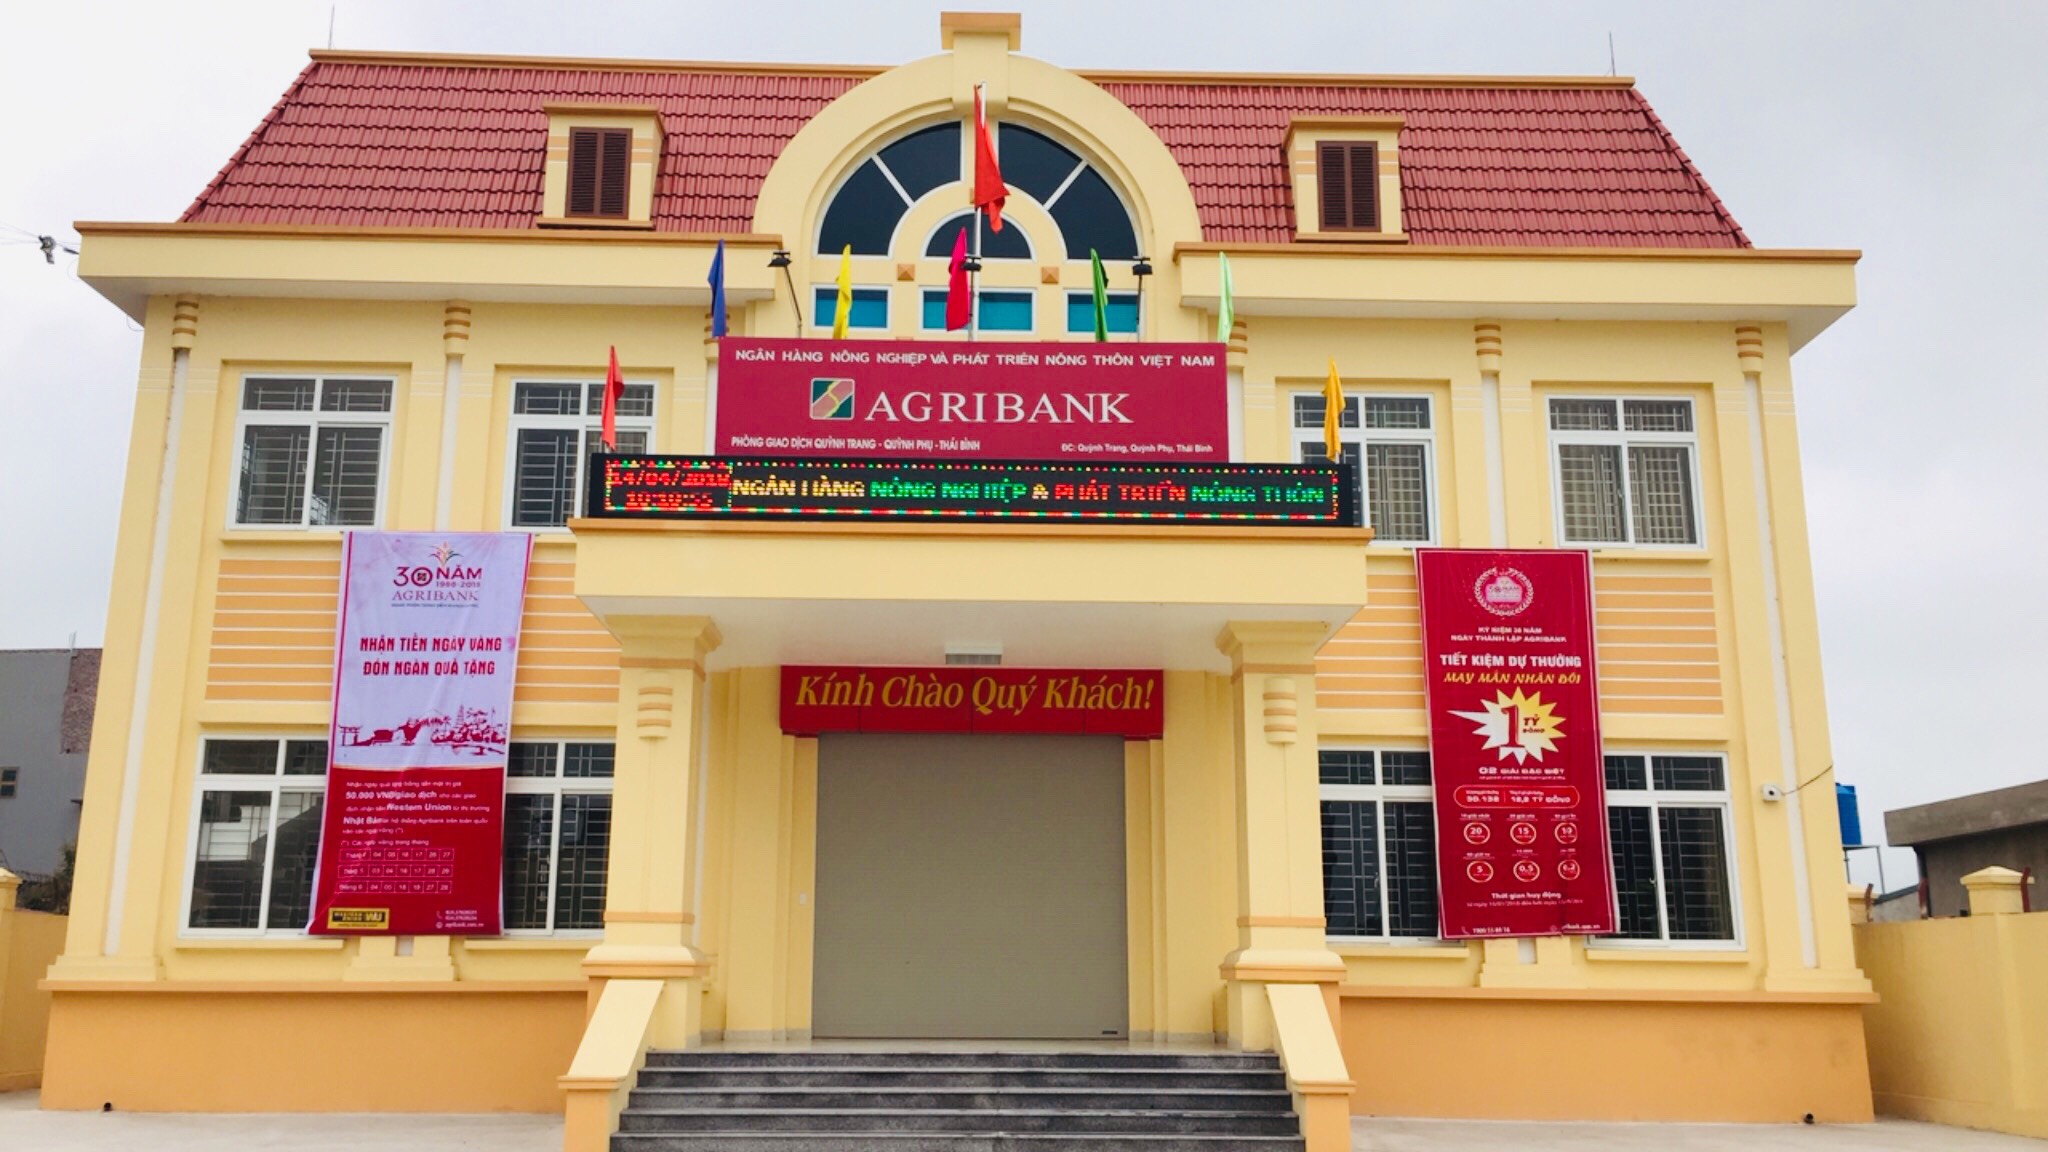 Trụ sở giao dịch Agribank Quỳnh Trang, huyện Hưng Hà